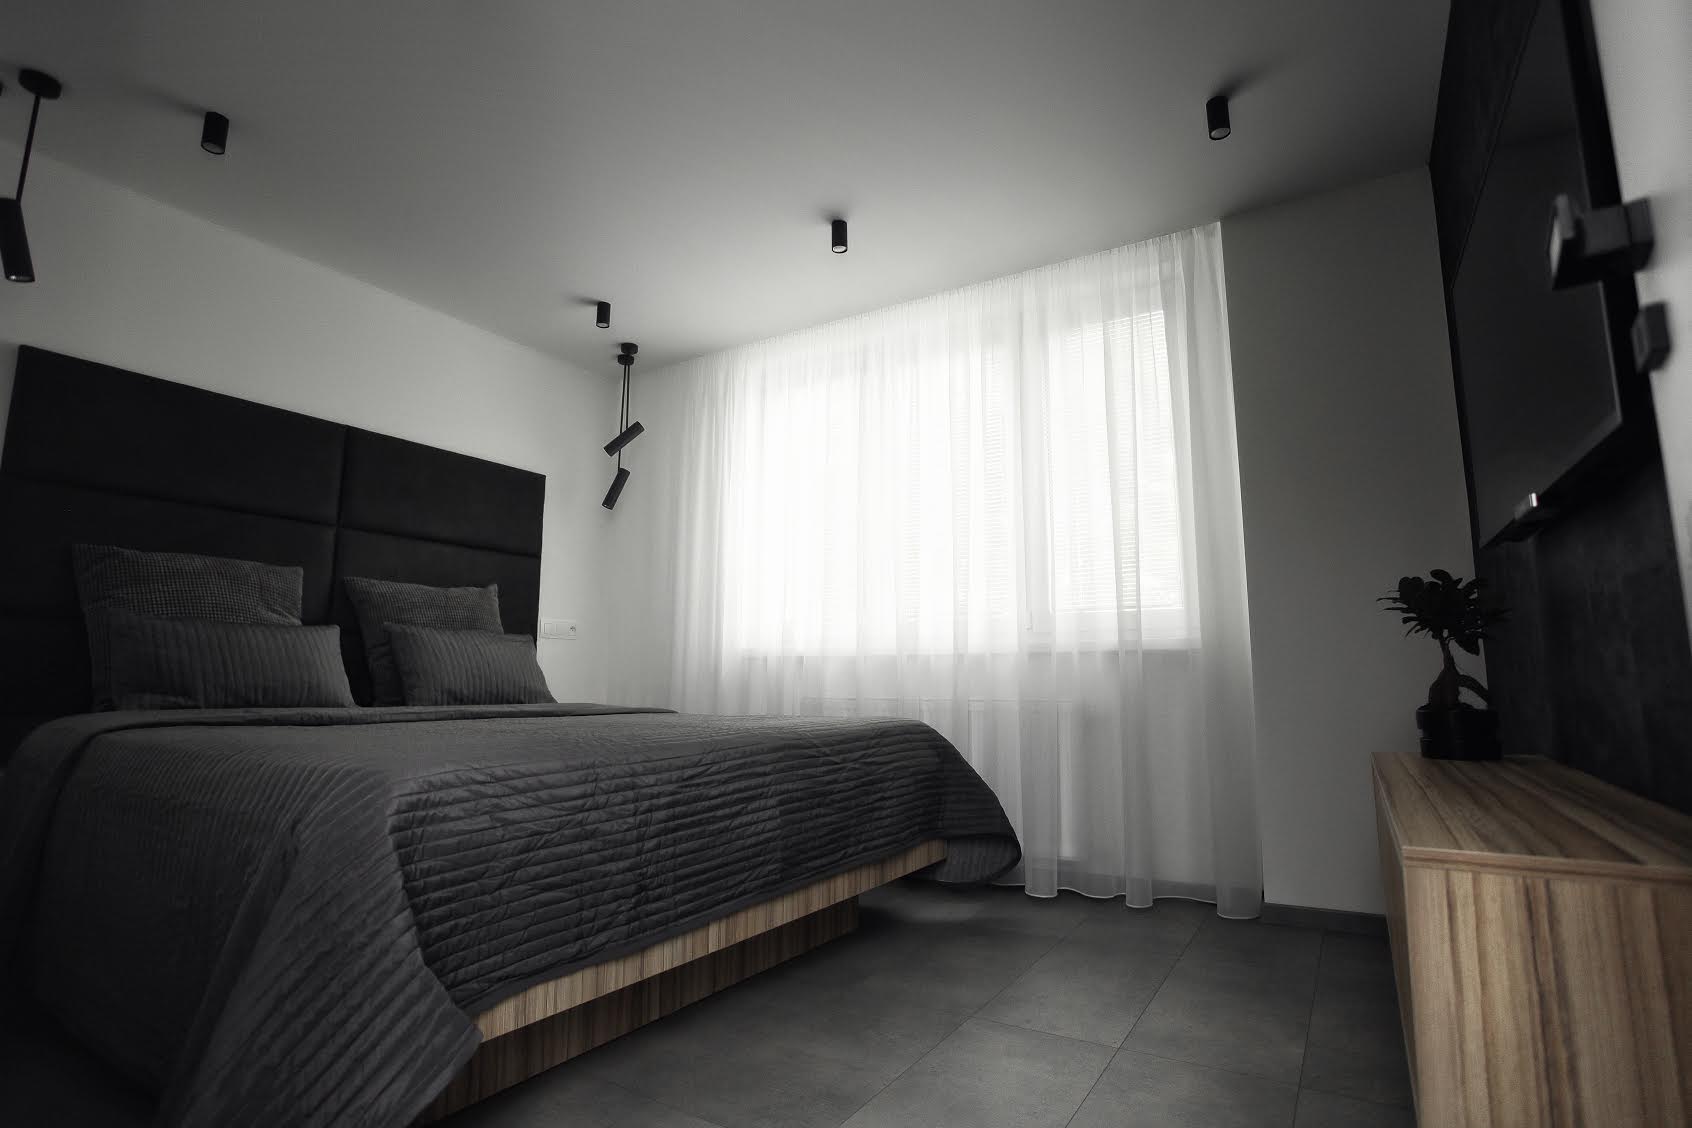 A modern otthonokban a sötétítőt és függönyt a plafonra szerelt alumínium függönysínre is lehet rögzíteni